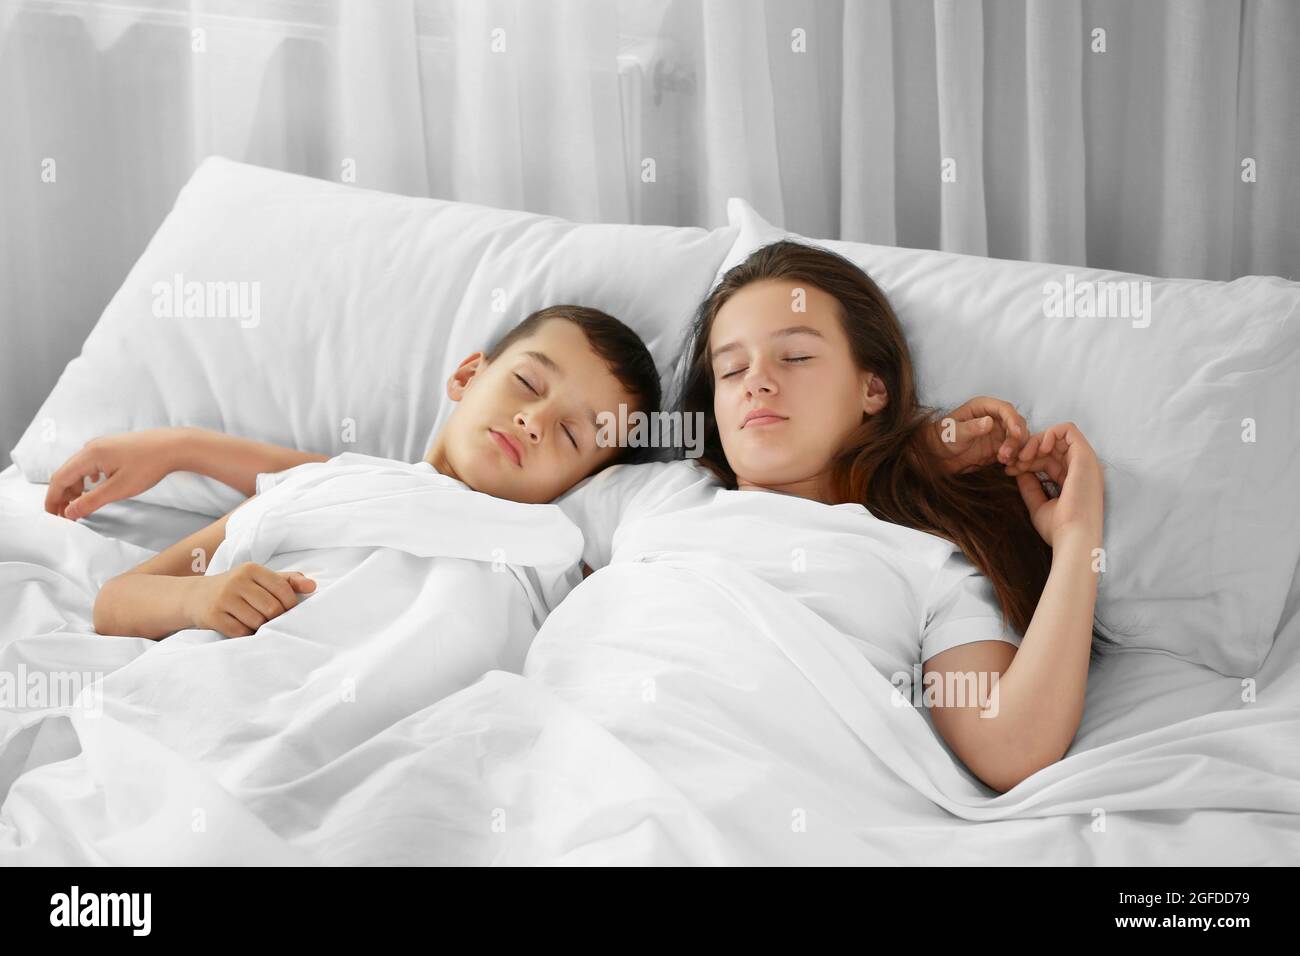 Русская сестра трахается со спящим братом на кровати